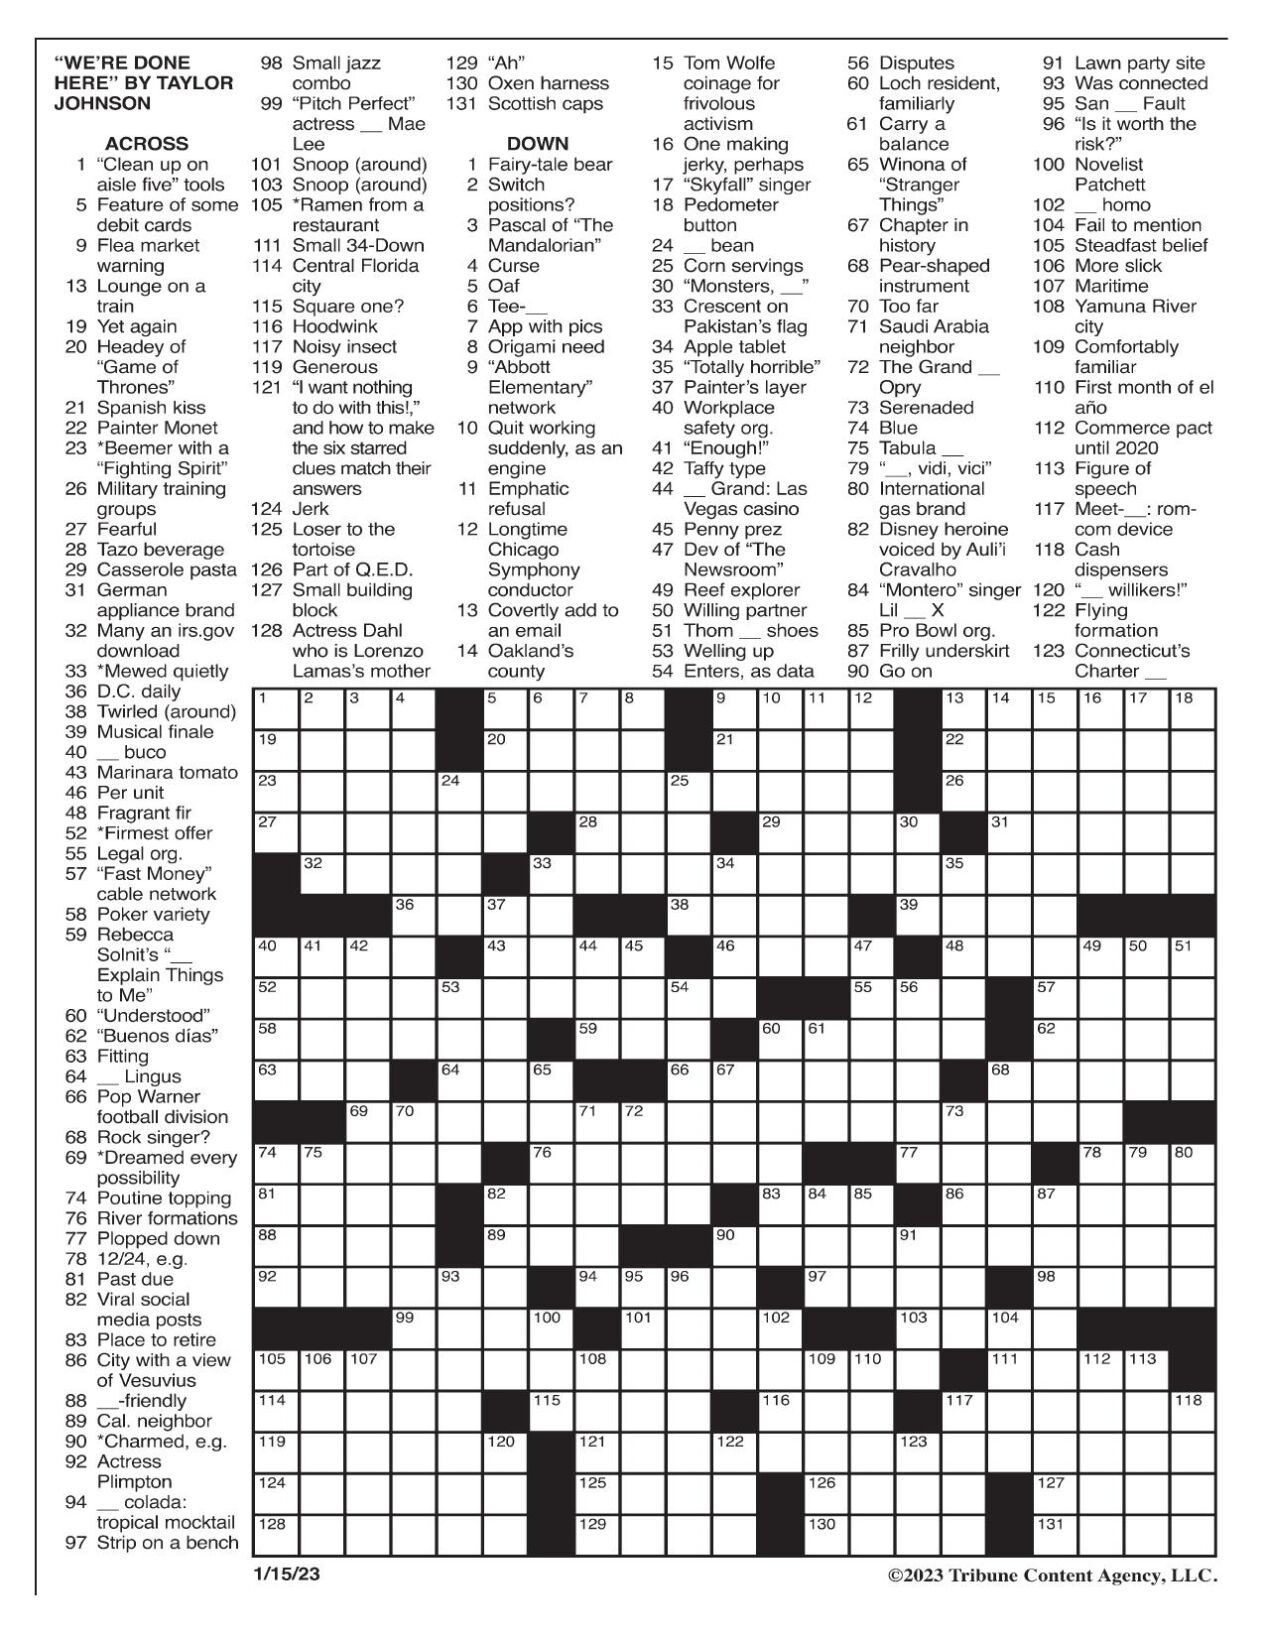 LA Times Crossword 31 Jan 23, Tuesday 